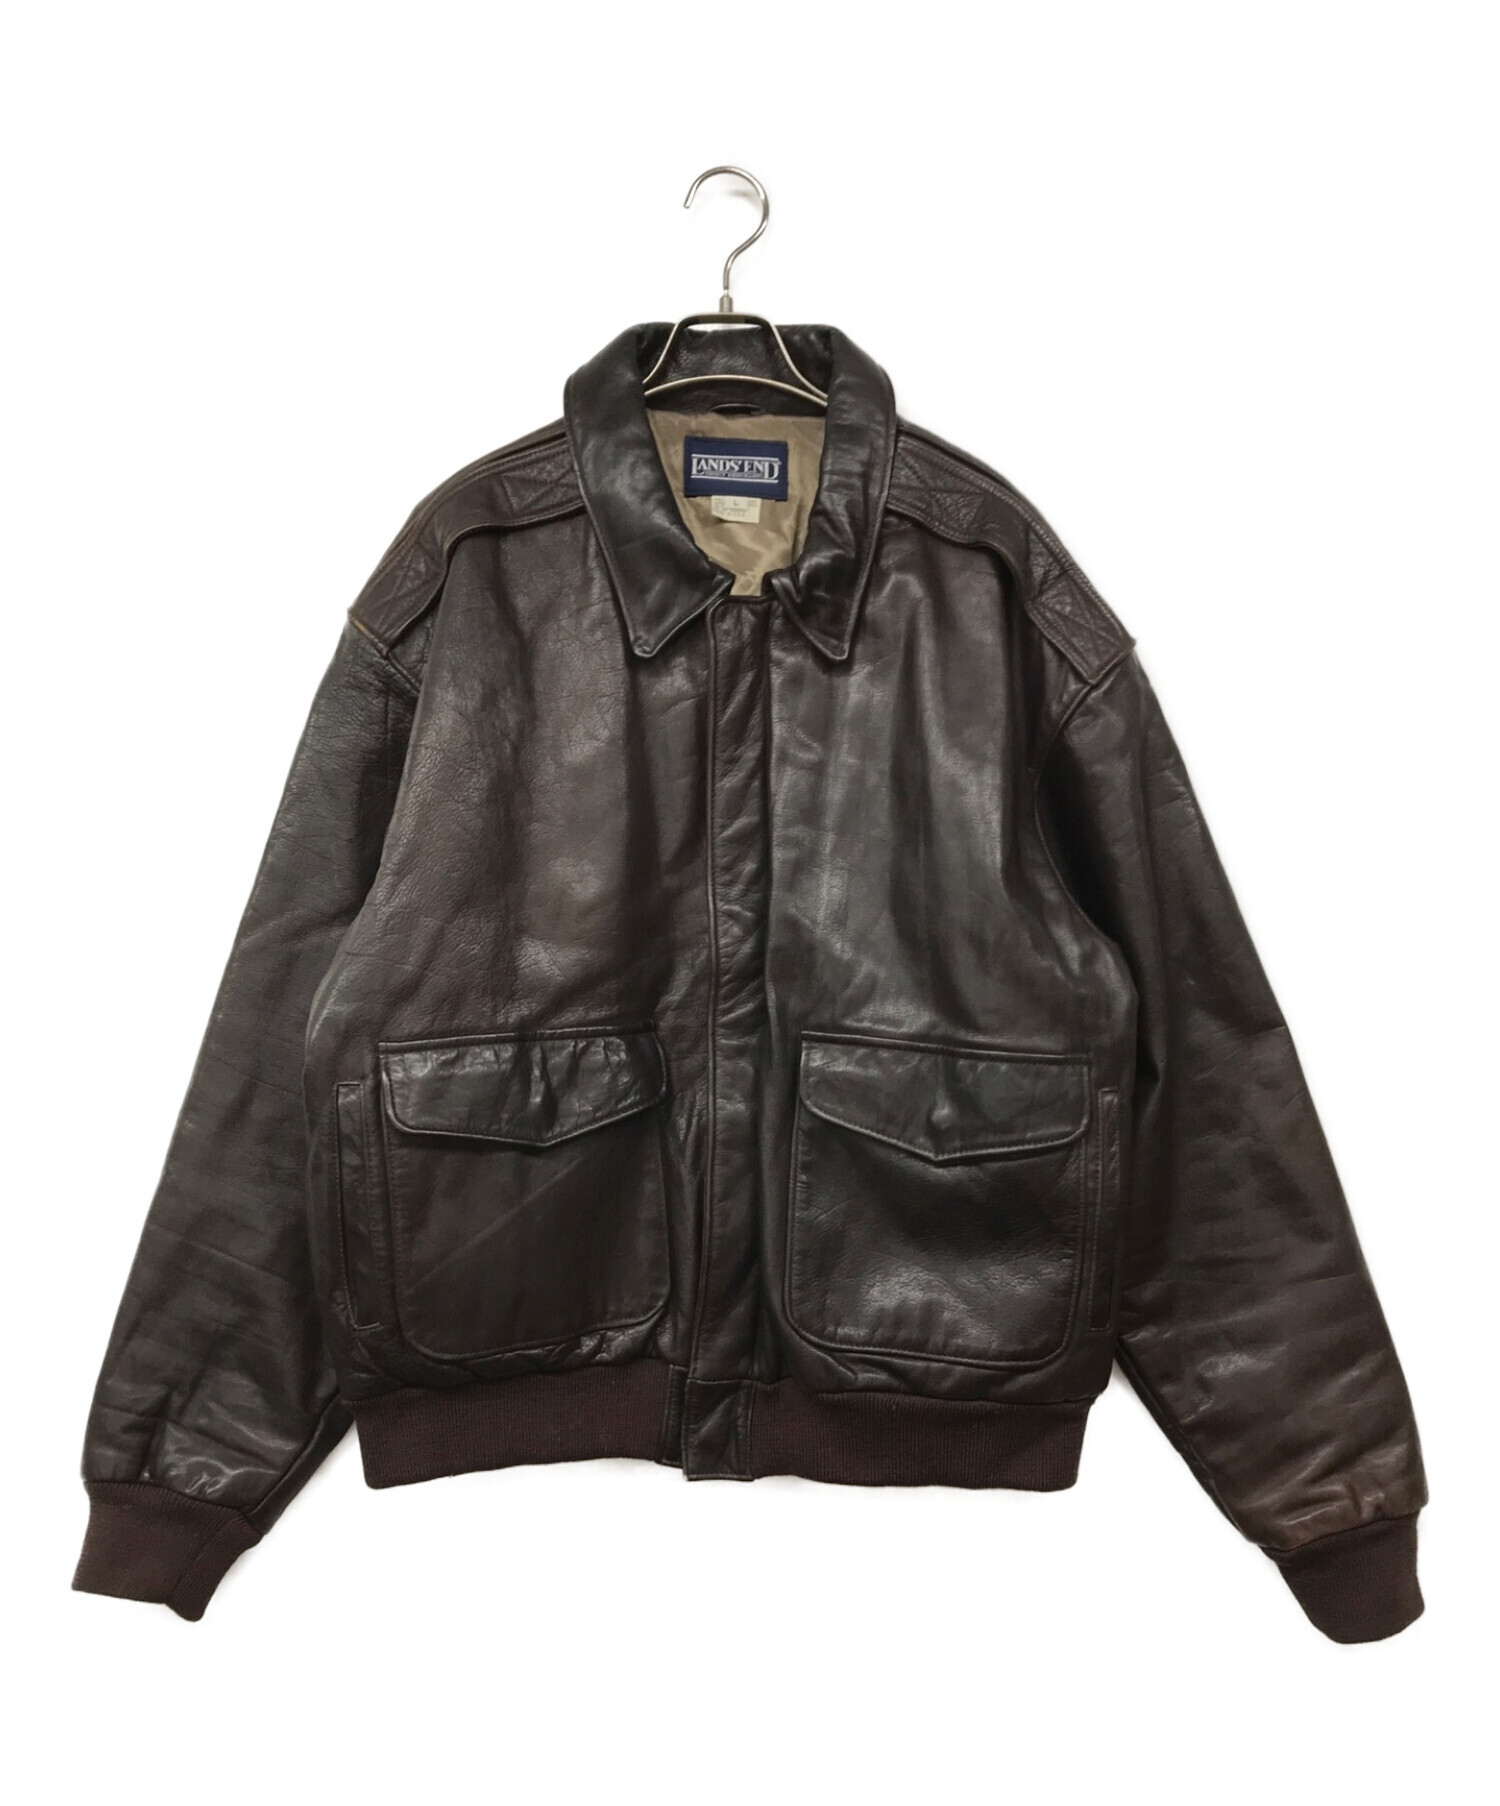 こちらは2000年代のPPRADA 00s no collar BLACK leather jacket